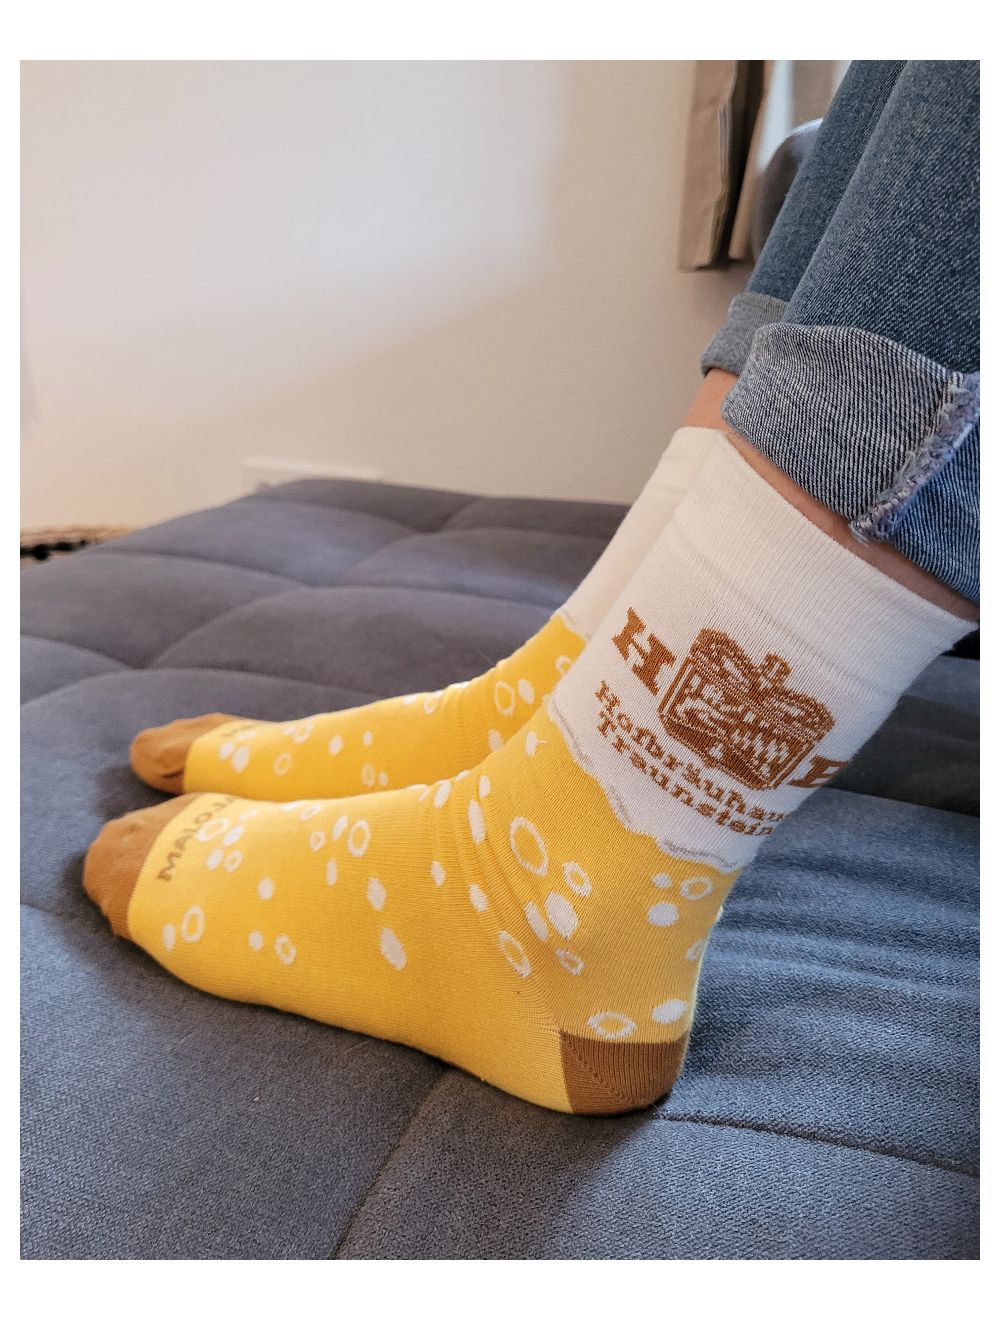 Maloja "Hofei" Socken